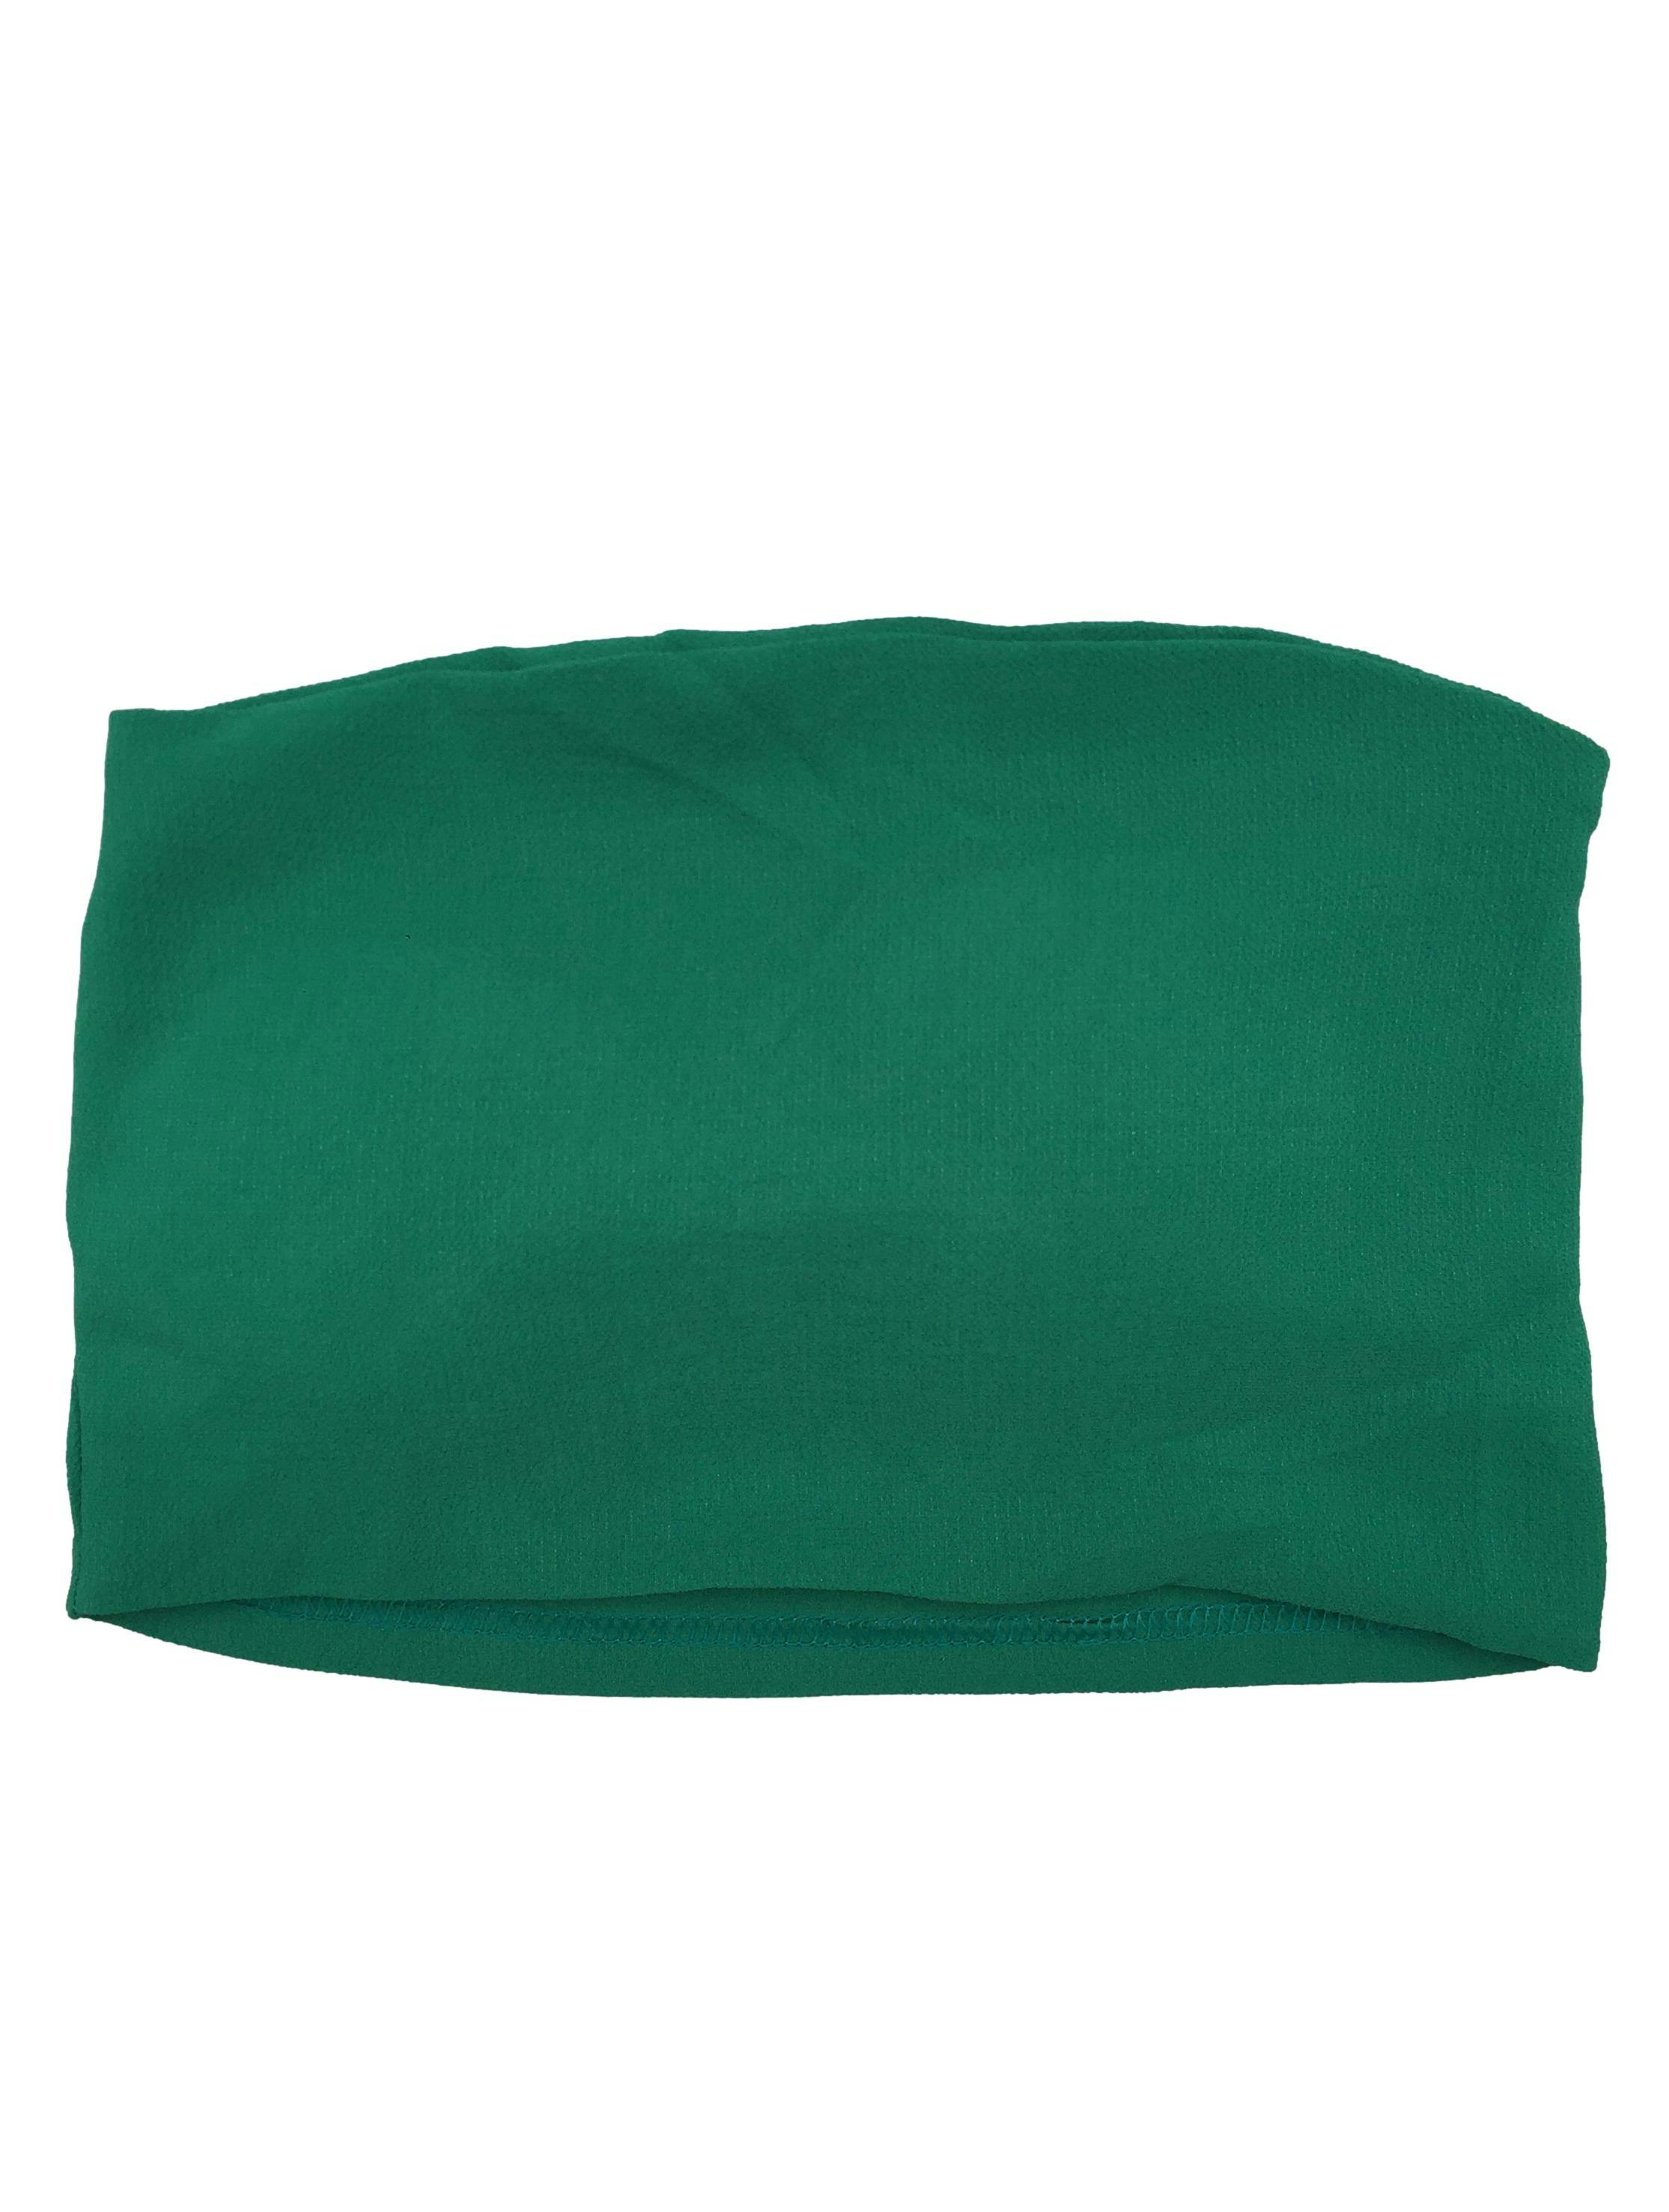 Top strapless verde de tela crepé con copas y elástico posterior. Busto 62cm sin estirar, Largo 17cm.